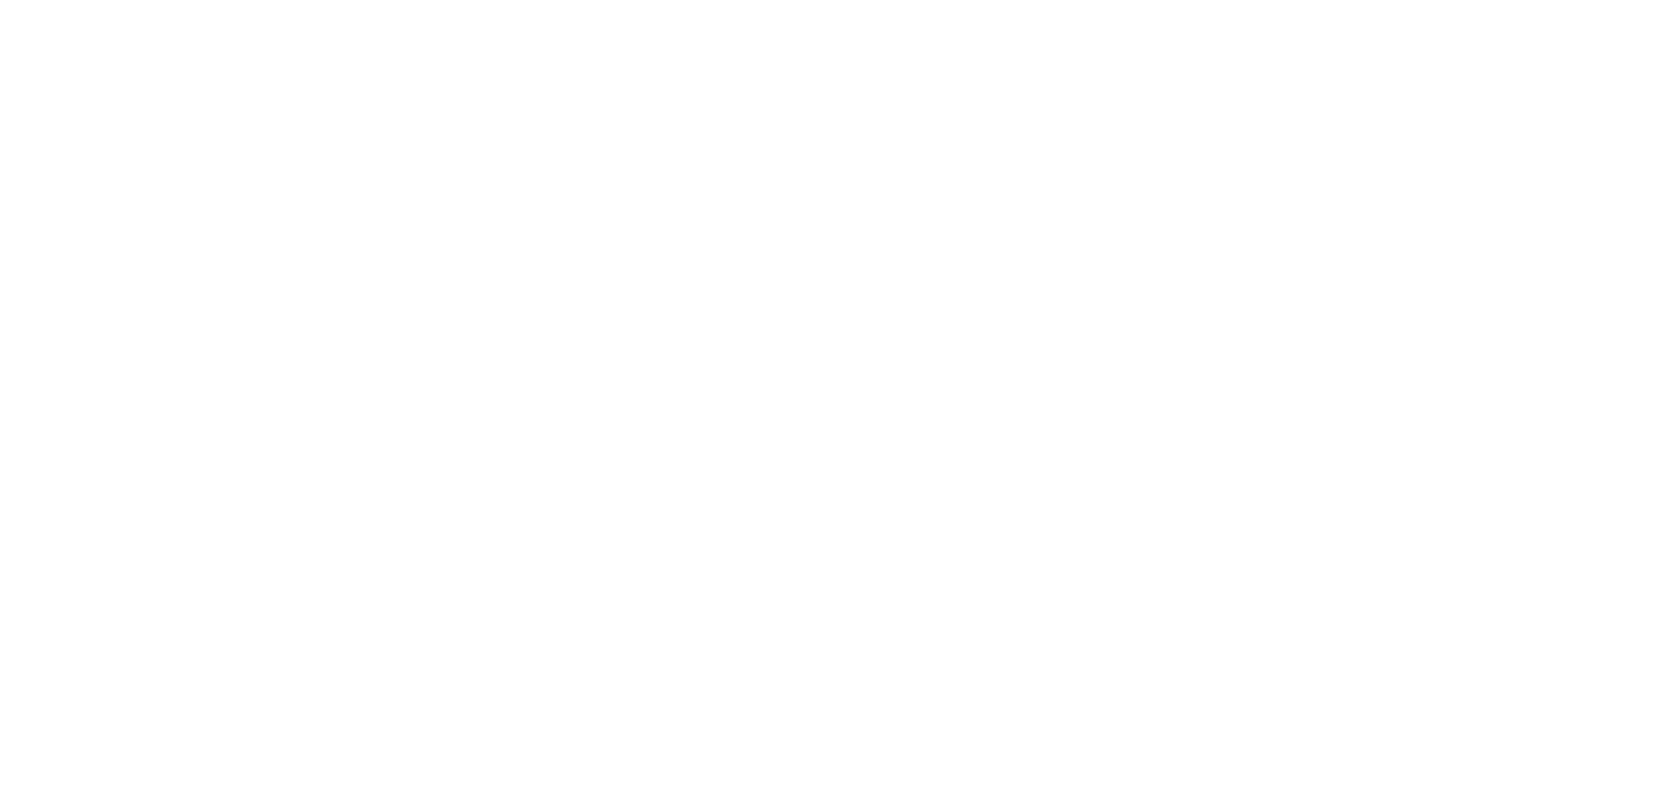 альтернативная версия шрифтового логотипа со встроенным УТП компании, где D – дровяная печь, а W – два ударяющихся фужера